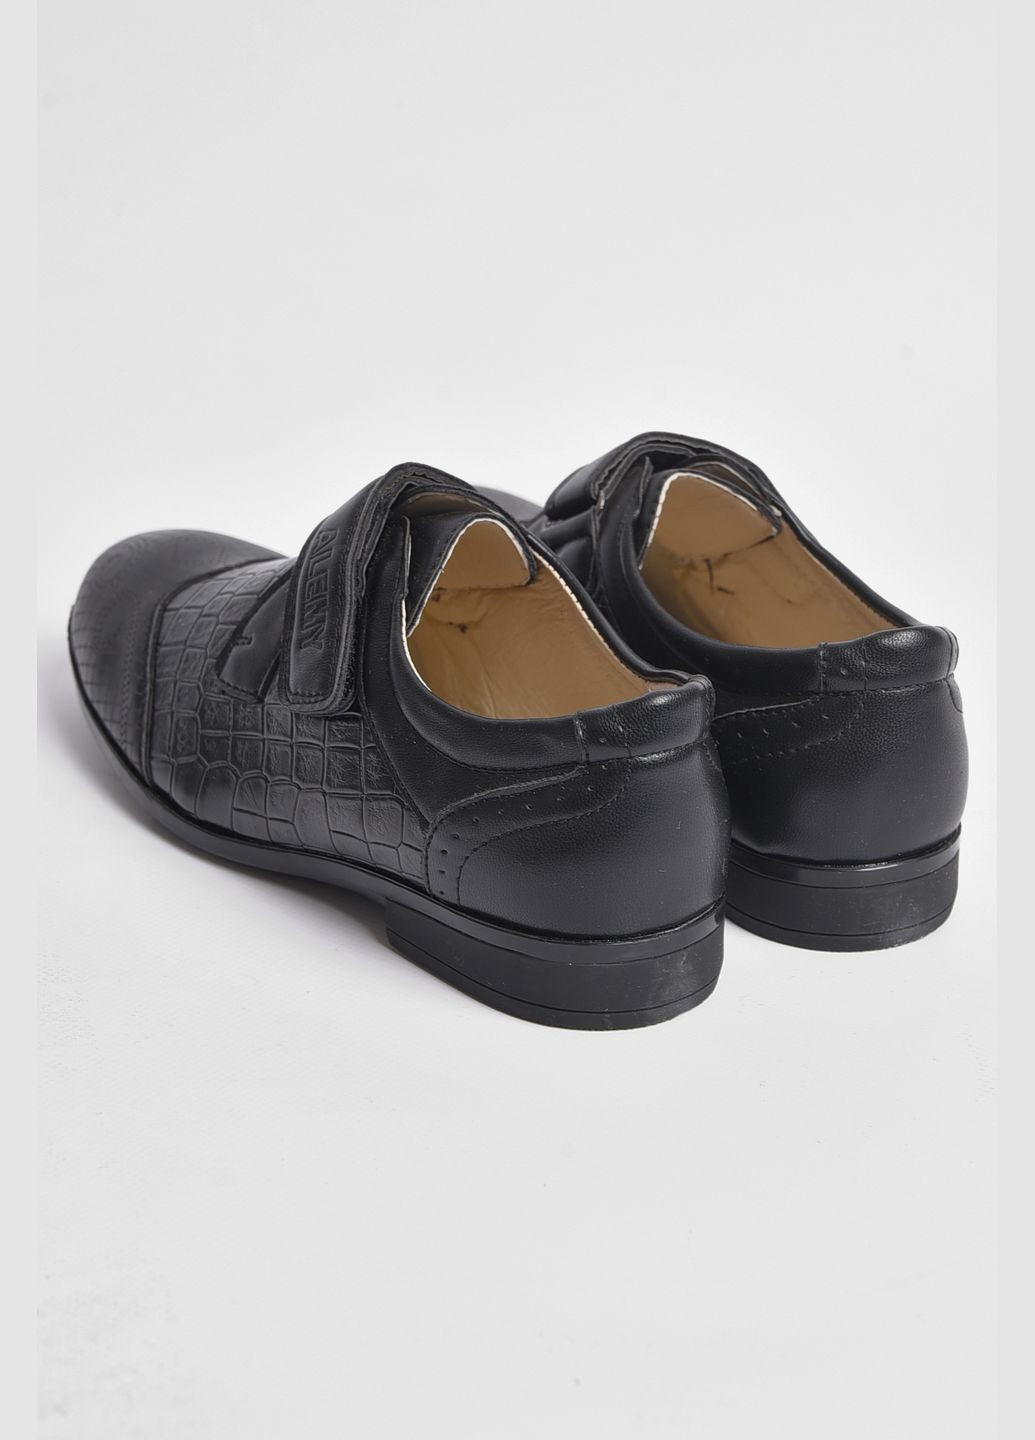 Коричневые туфли детские для мальчика коричневого цвета без шнурков Let's Shop